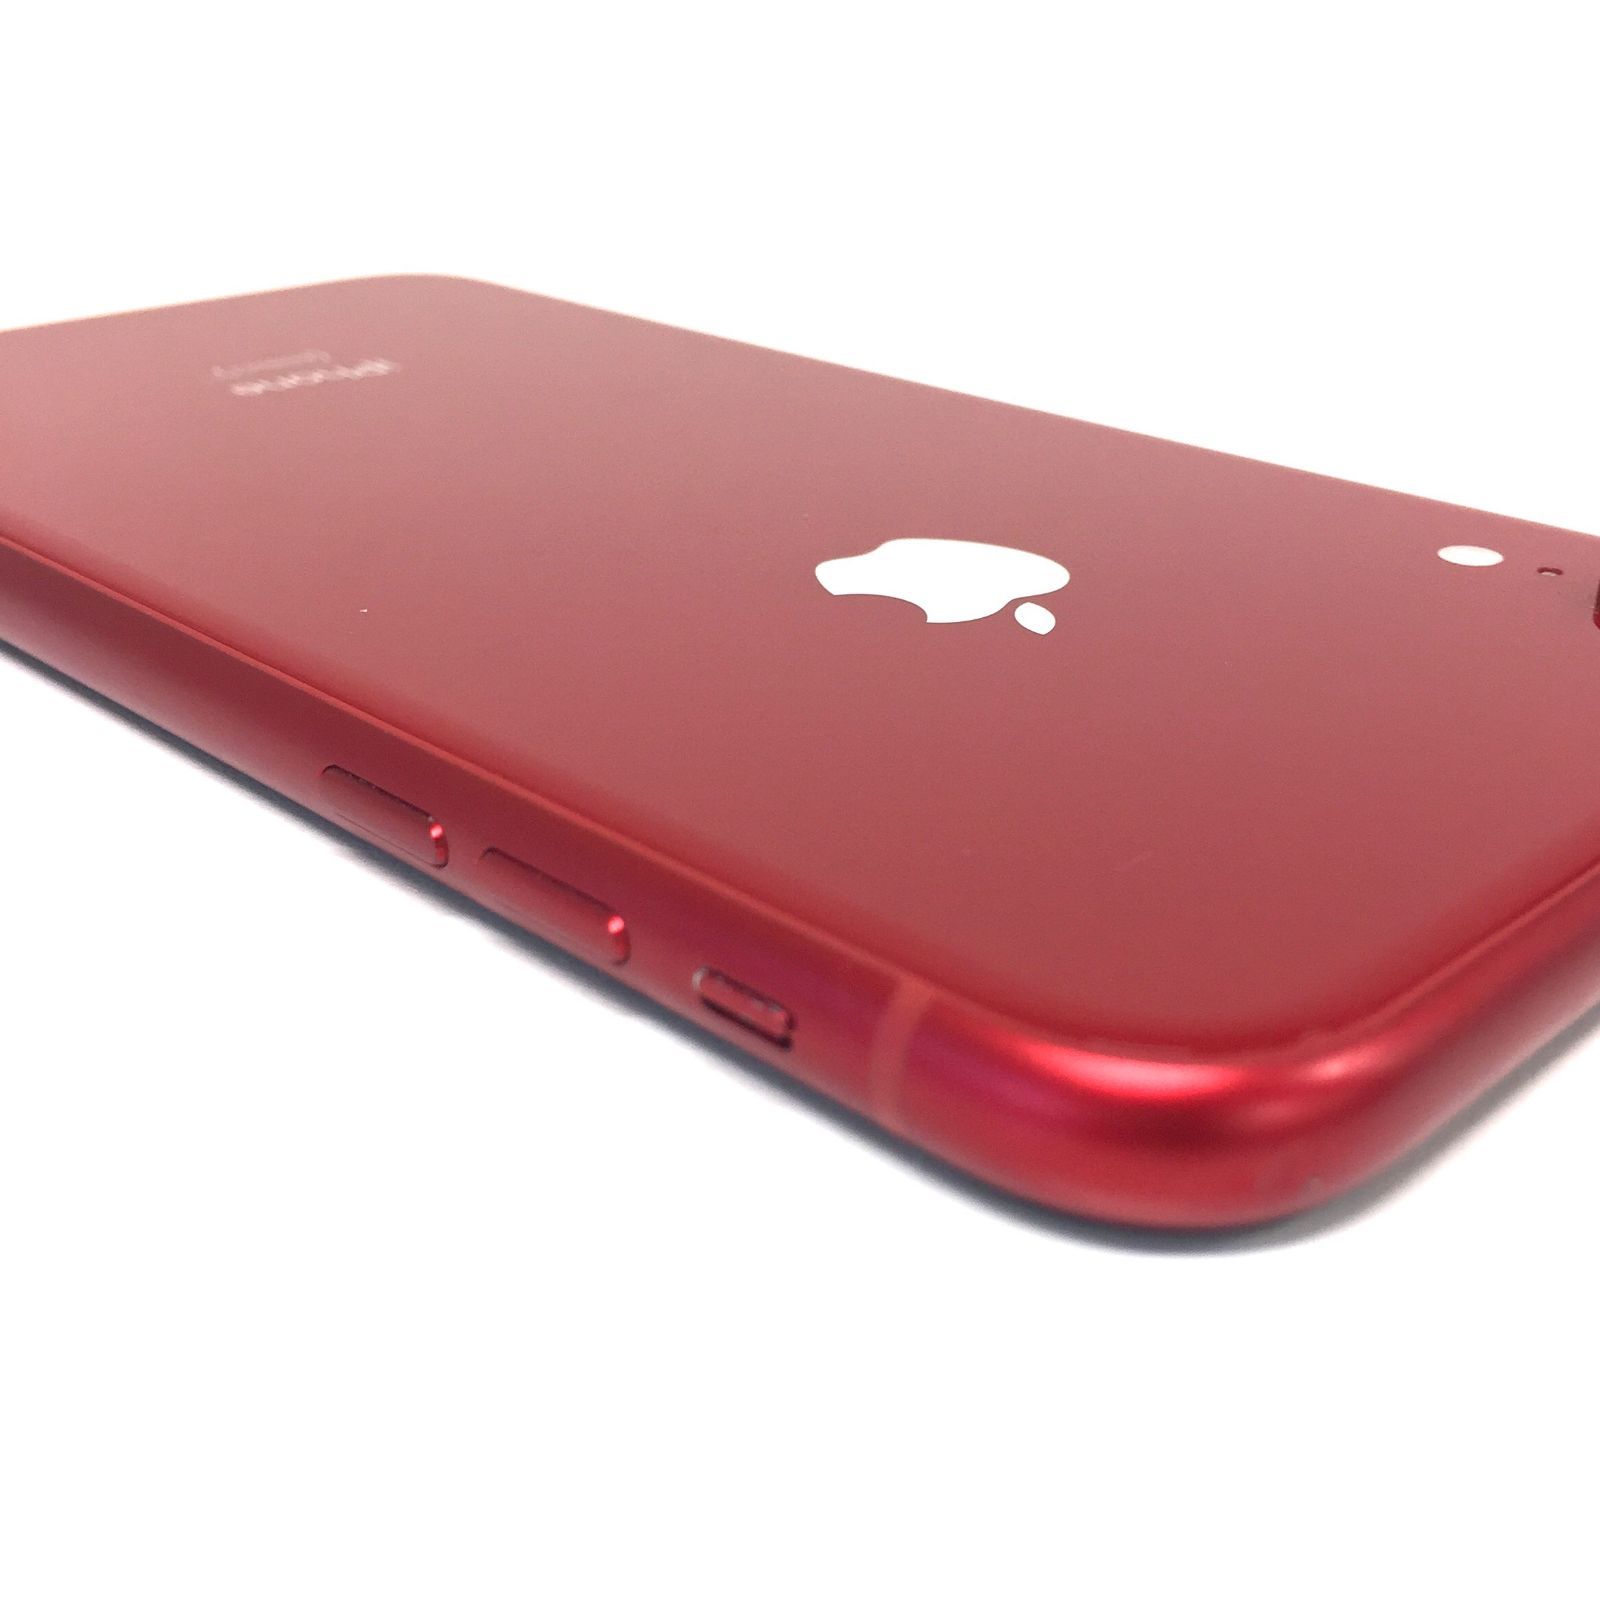 θ【ジャンク品/SIMロック解除済み】iPhone XR 128GB RED - メルカリ